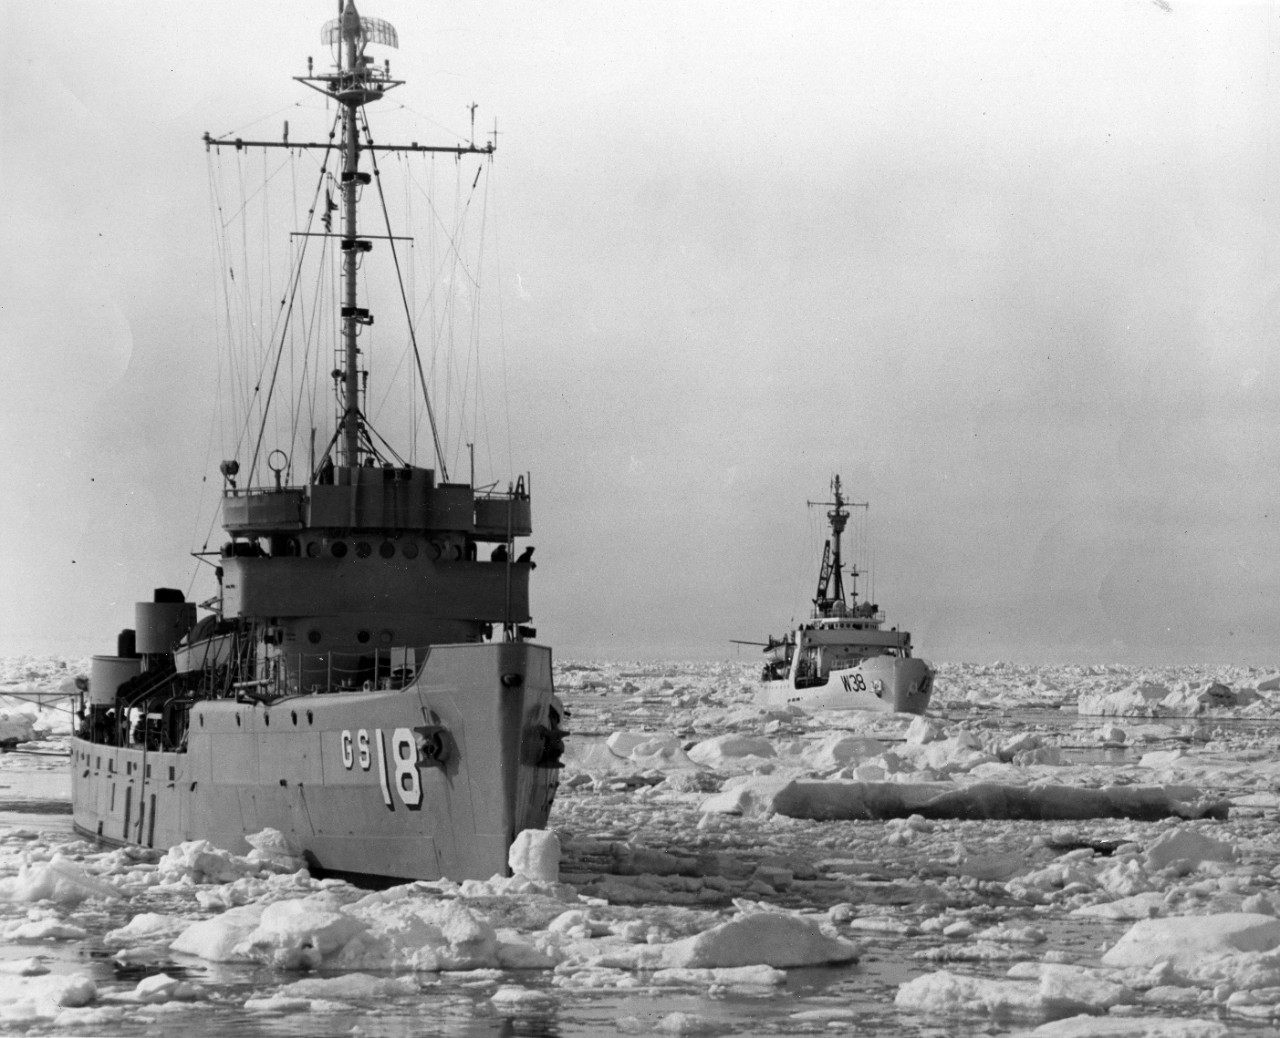 Burton Cazden Collection: ship attempting to break through the ice.